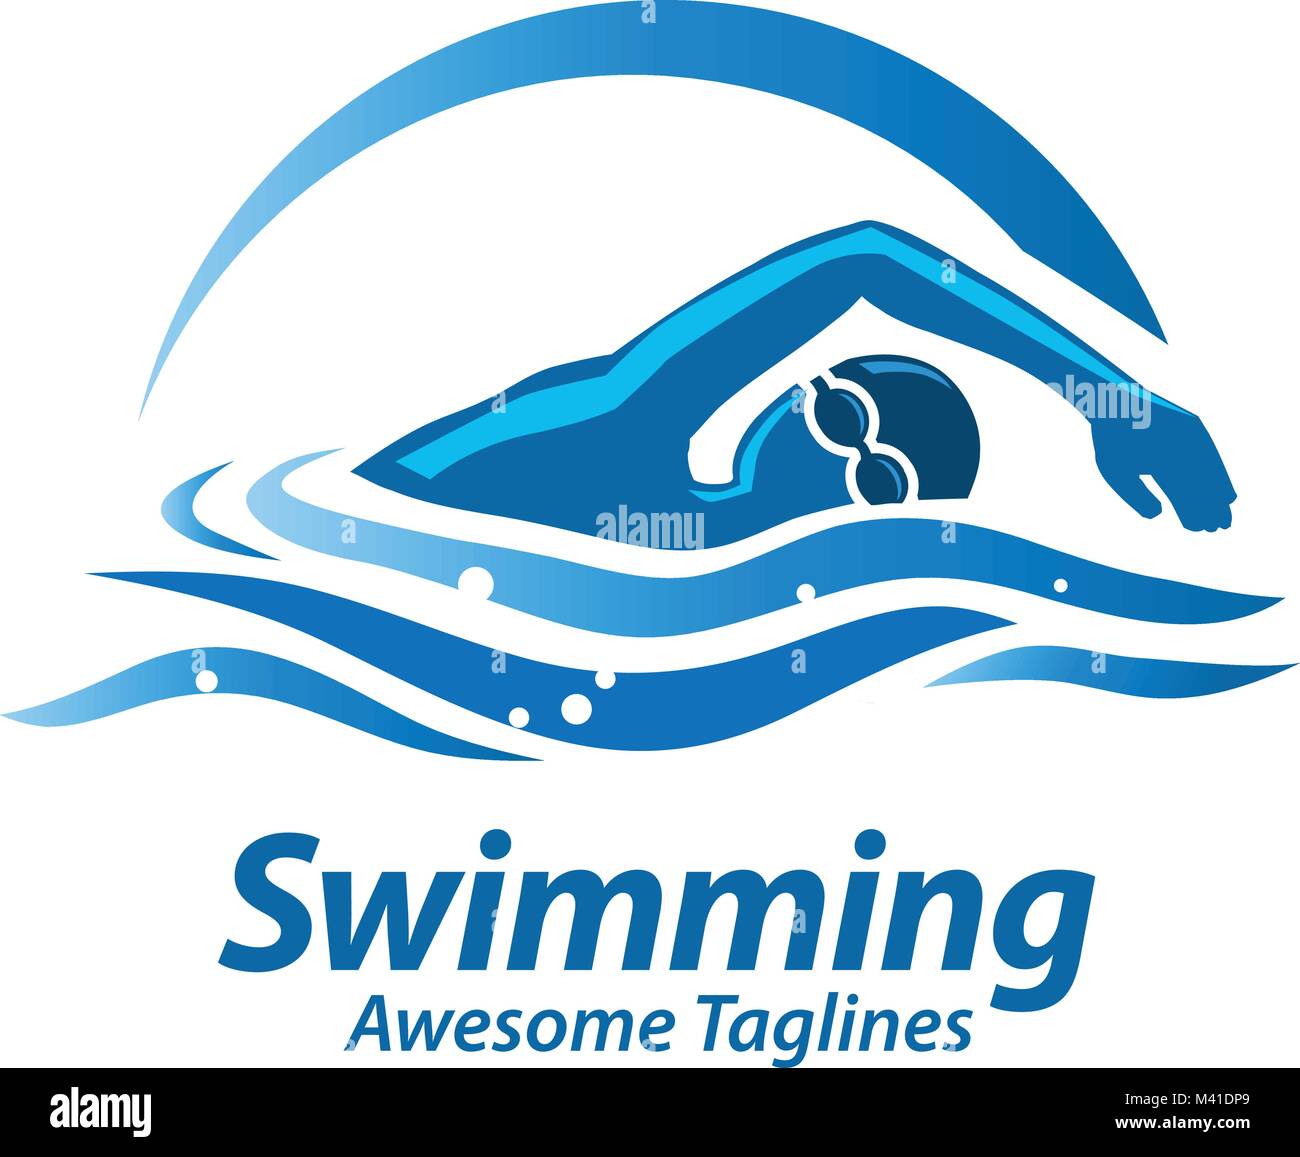 swimming logos images